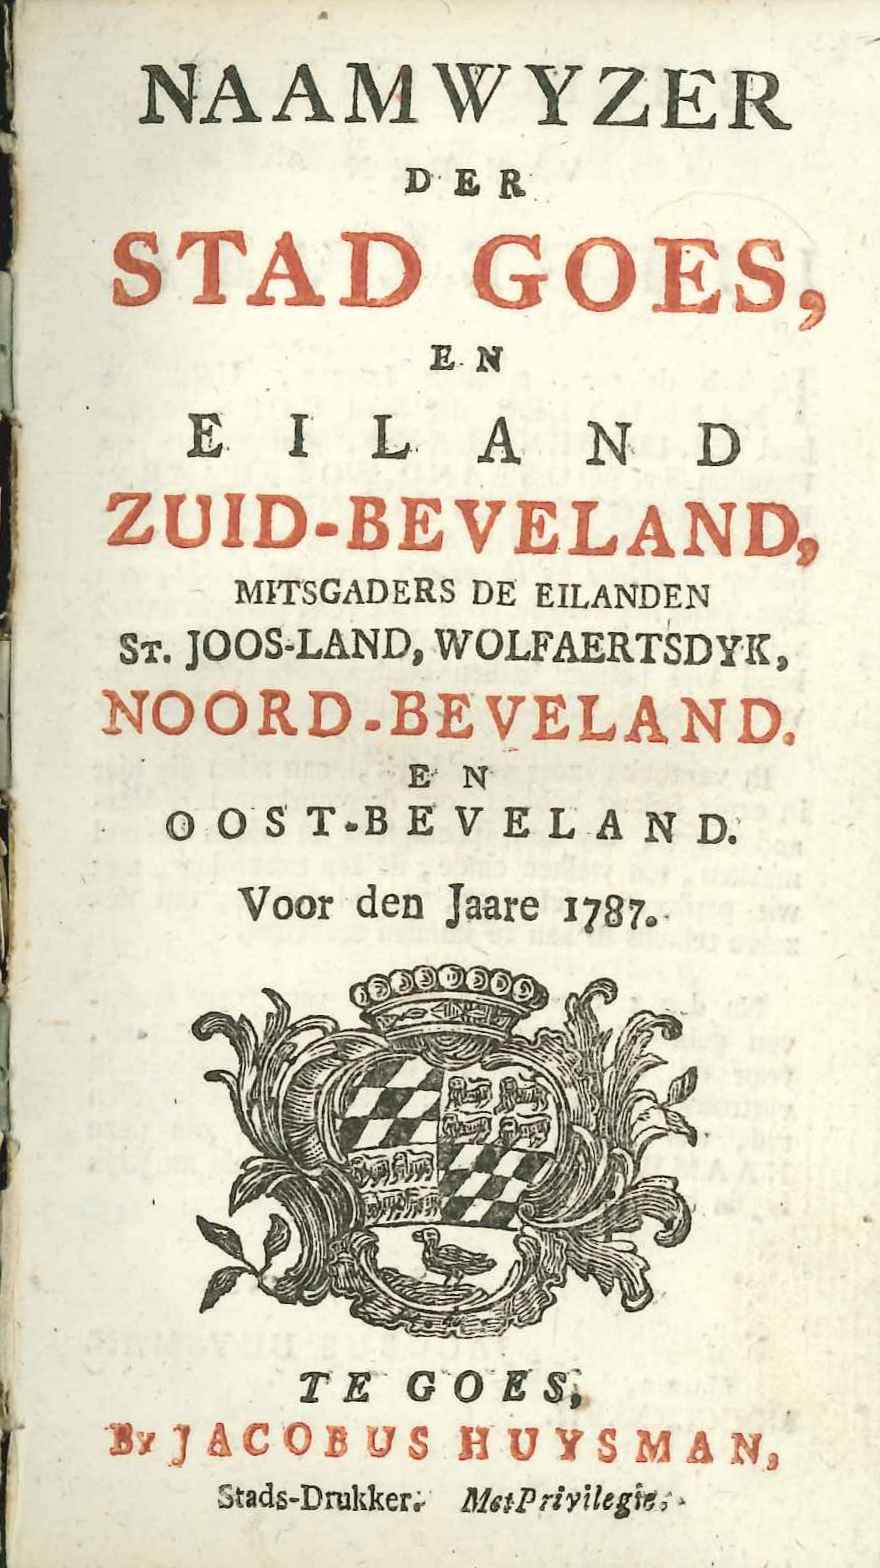 Titelblad van de Naamwyzer van Goes, 1787.